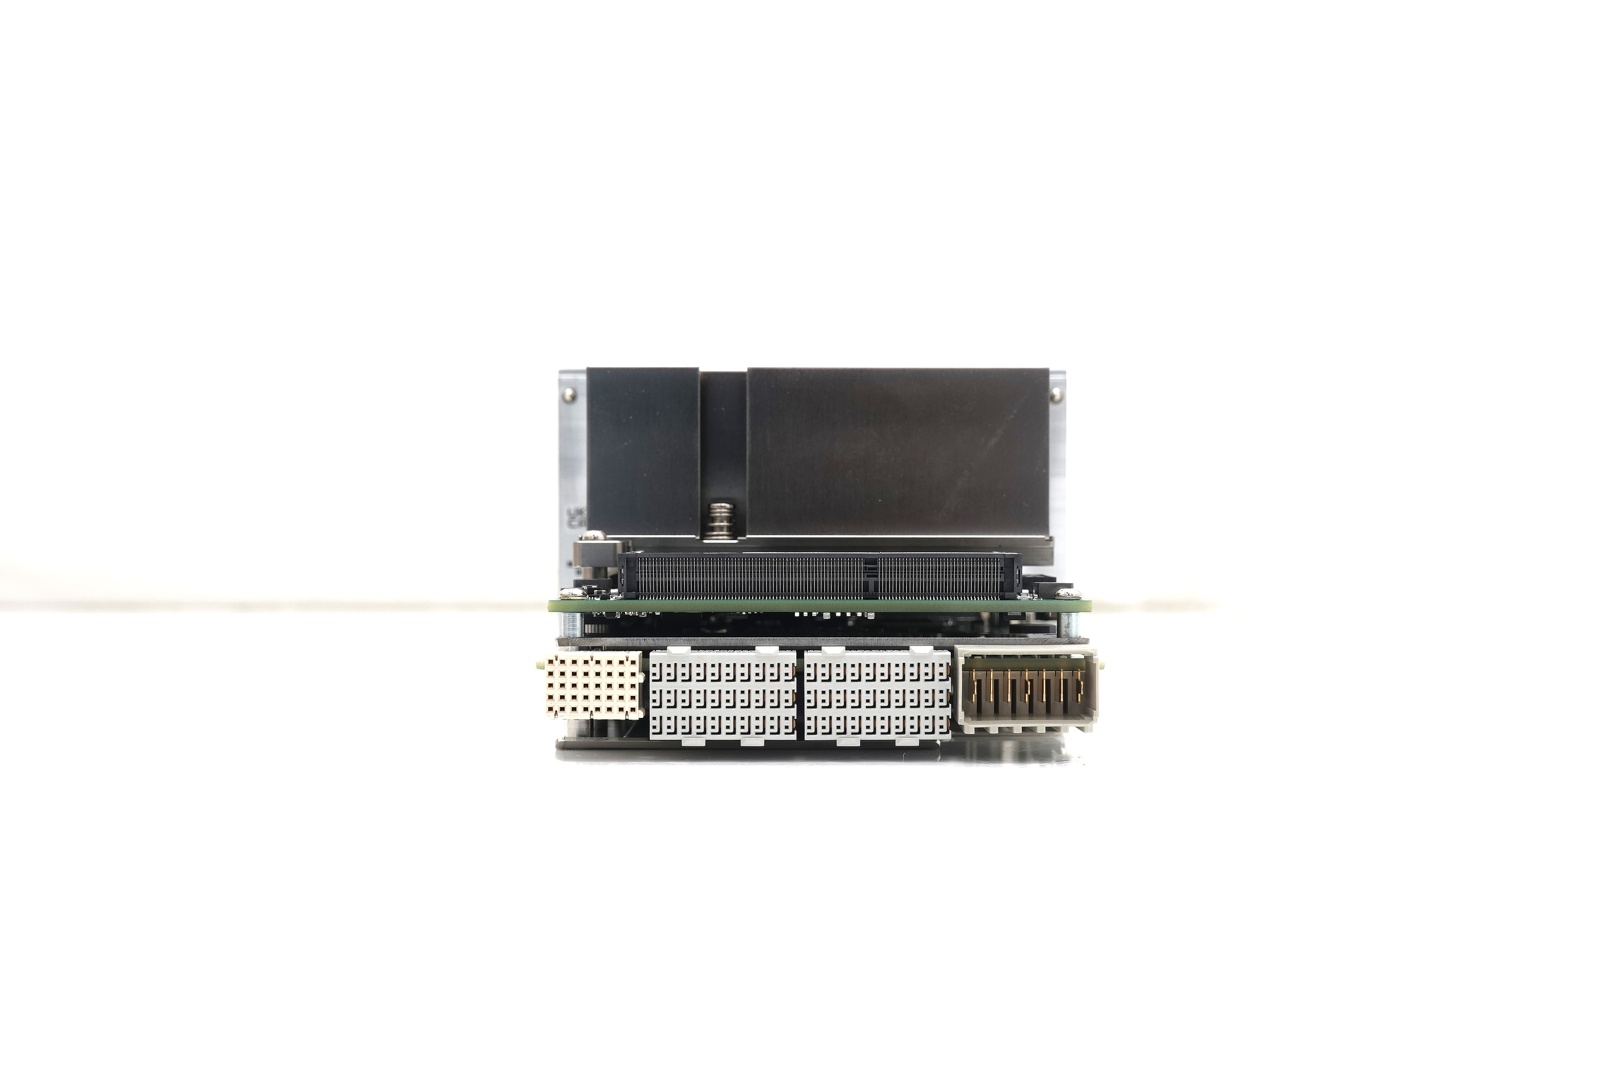 Keysight M9037A PXIe Embedded Controller / Intel i7 / 4GB RAM / 240GB SSD